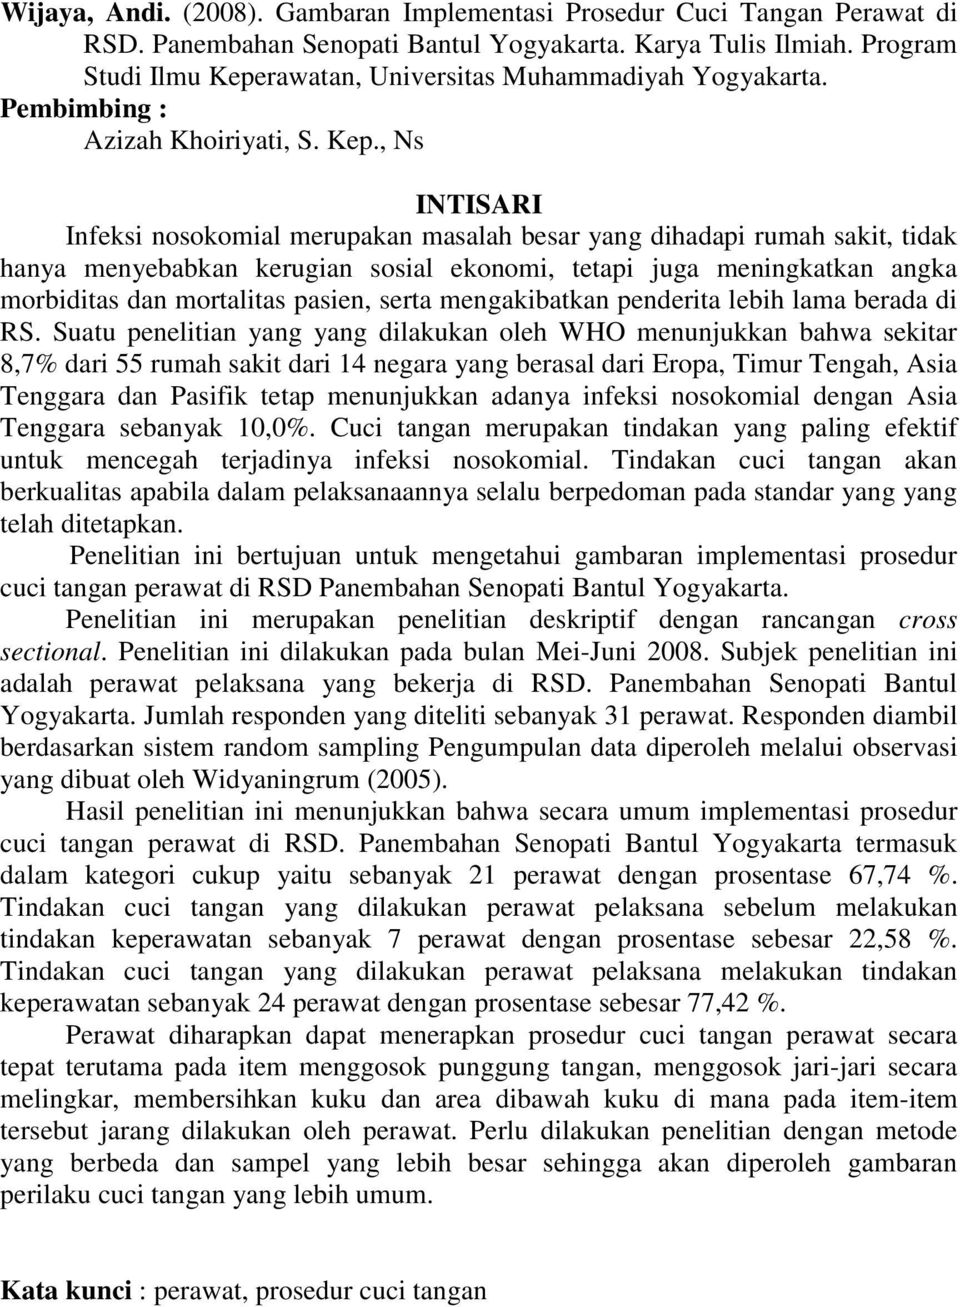 rawatan, Universitas Muhammadiyah Yogyakarta. Pembimbing : Azizah Khoiriyati, S. Kep.